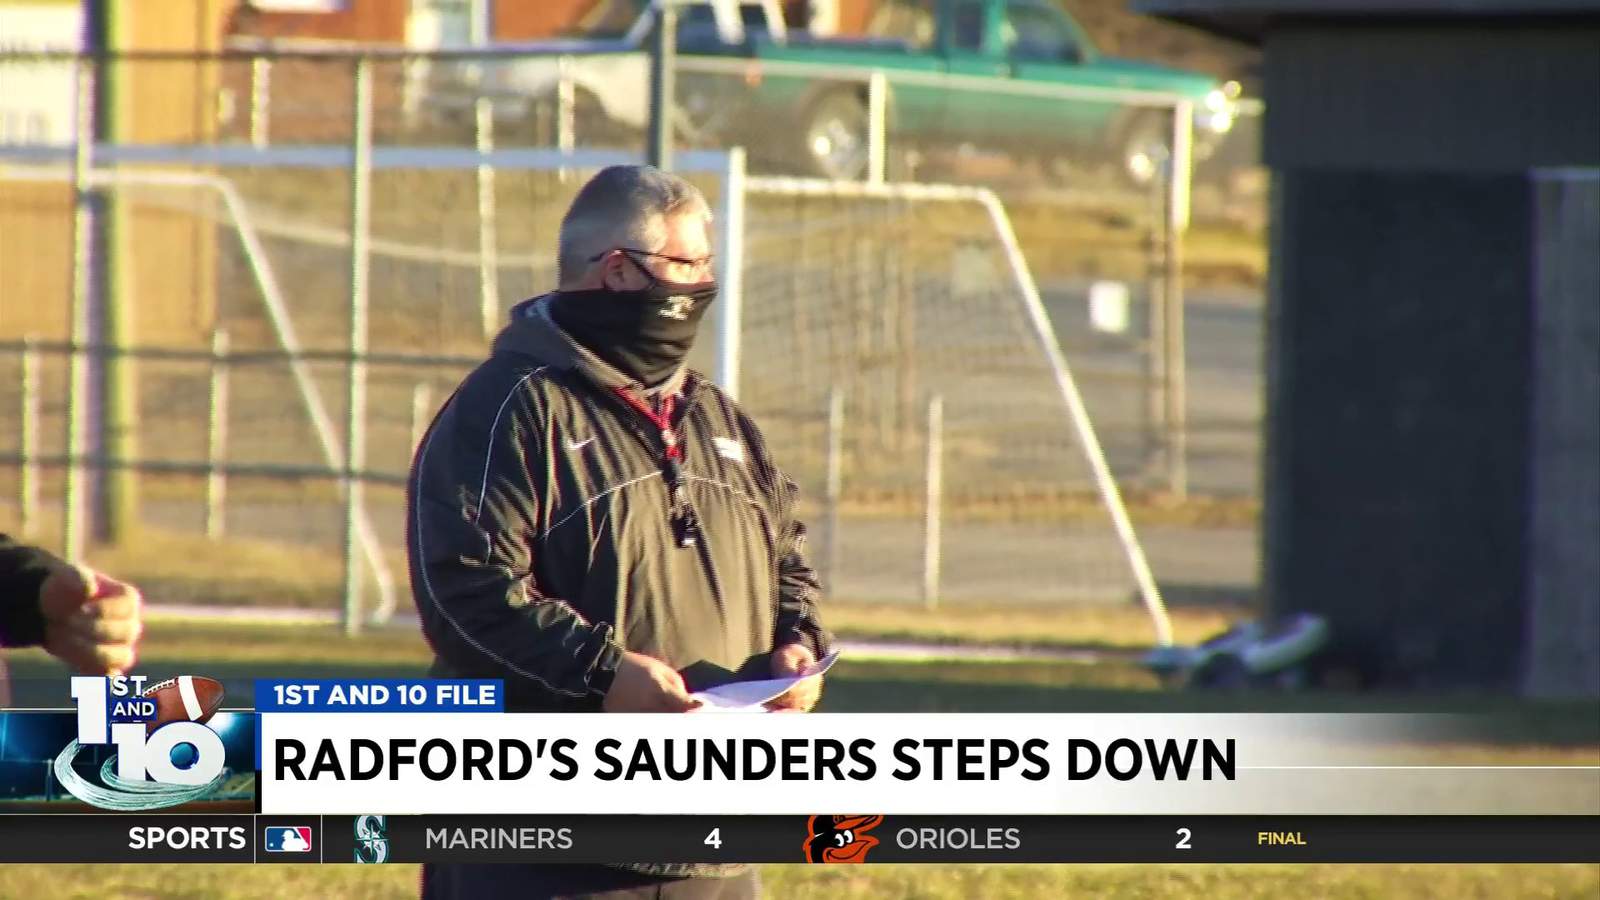 Radford’s Saunders steps down